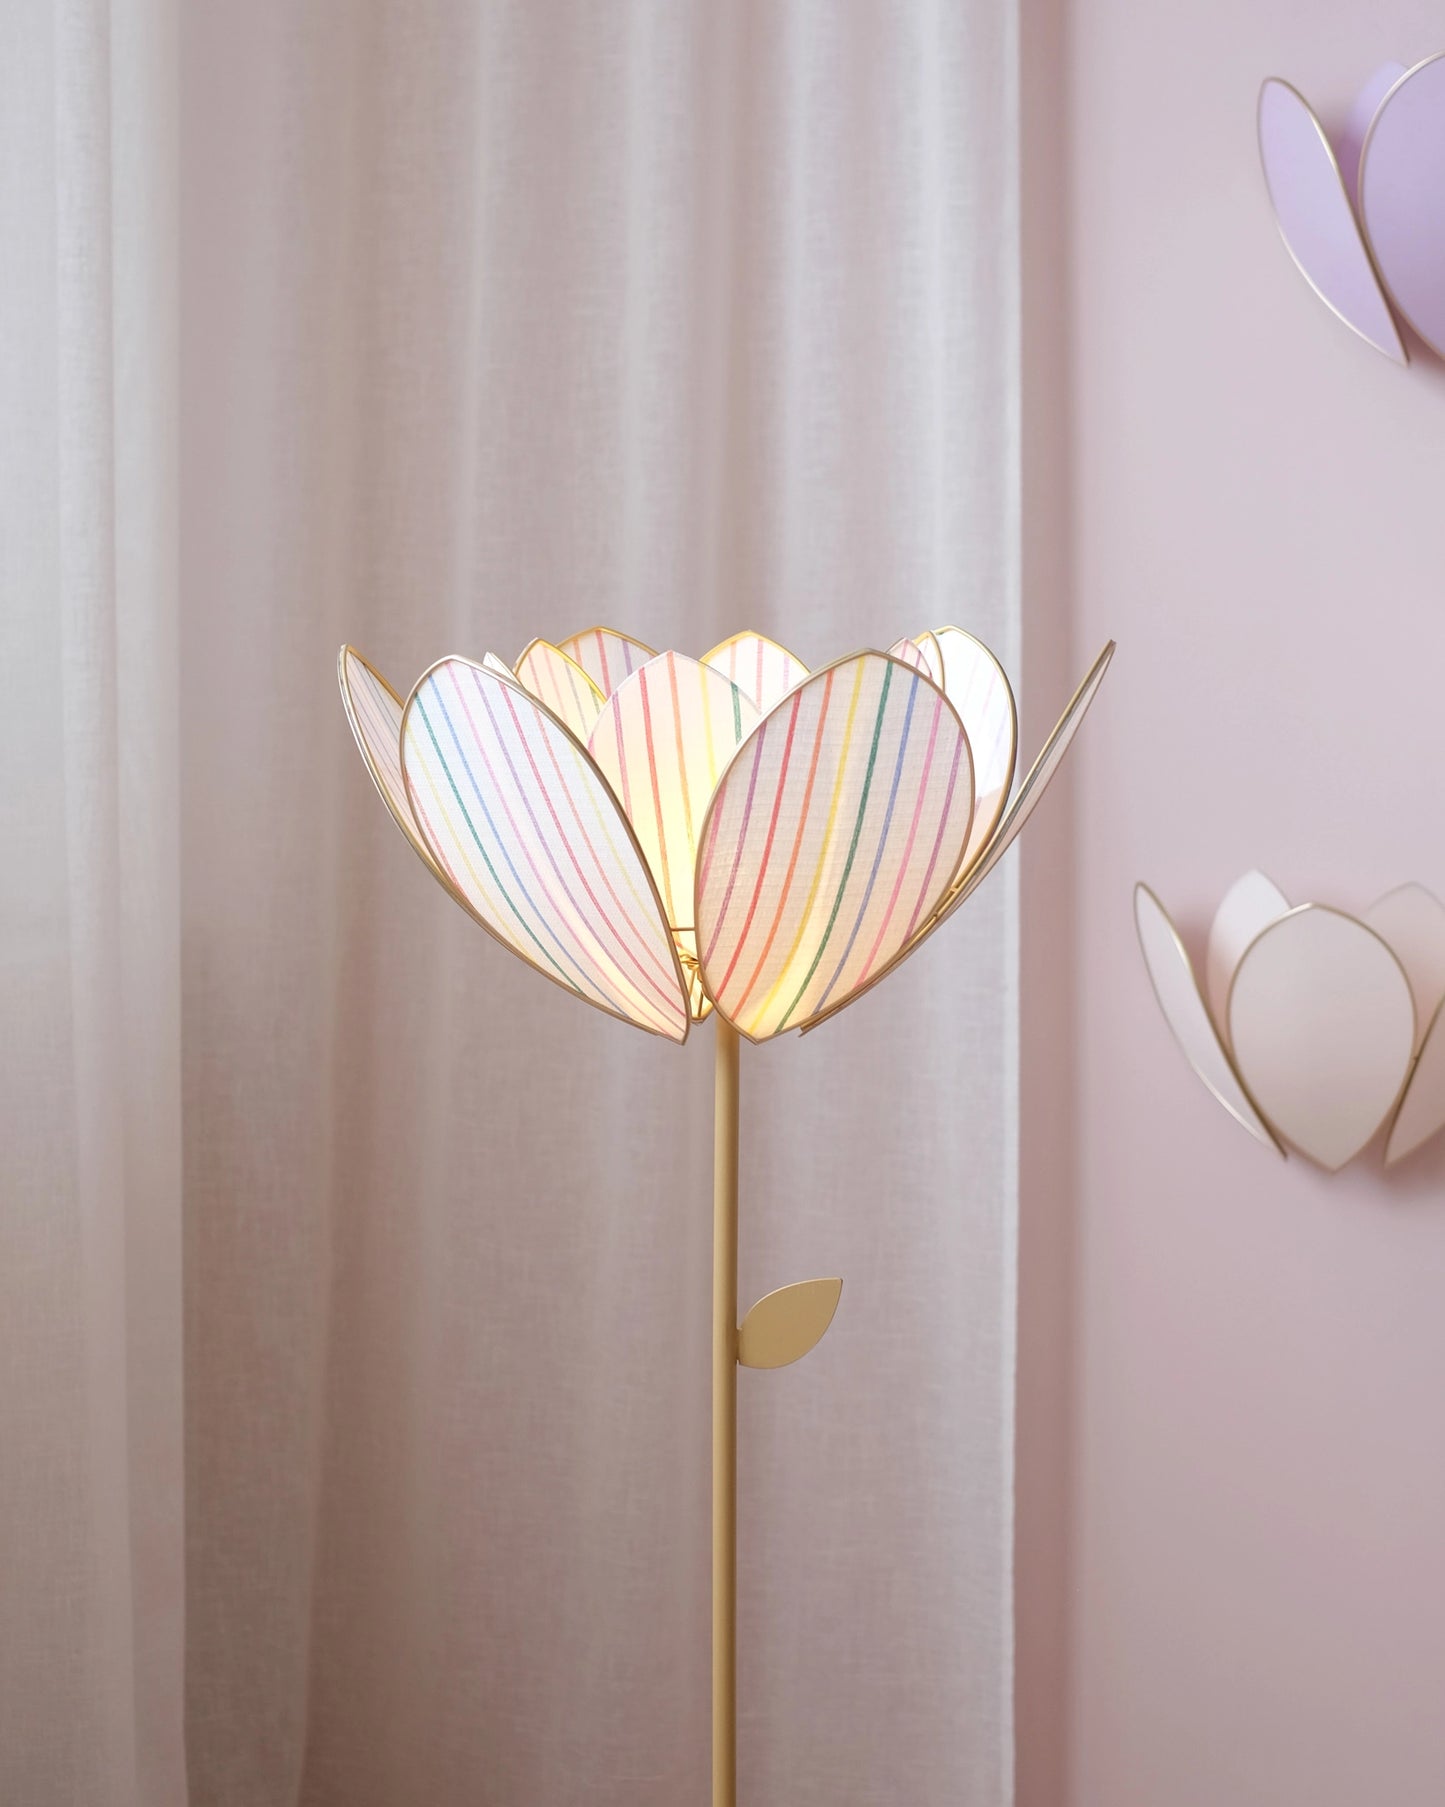 Abat-jour Fleur pour lampadaire - Double Rayures multicolores